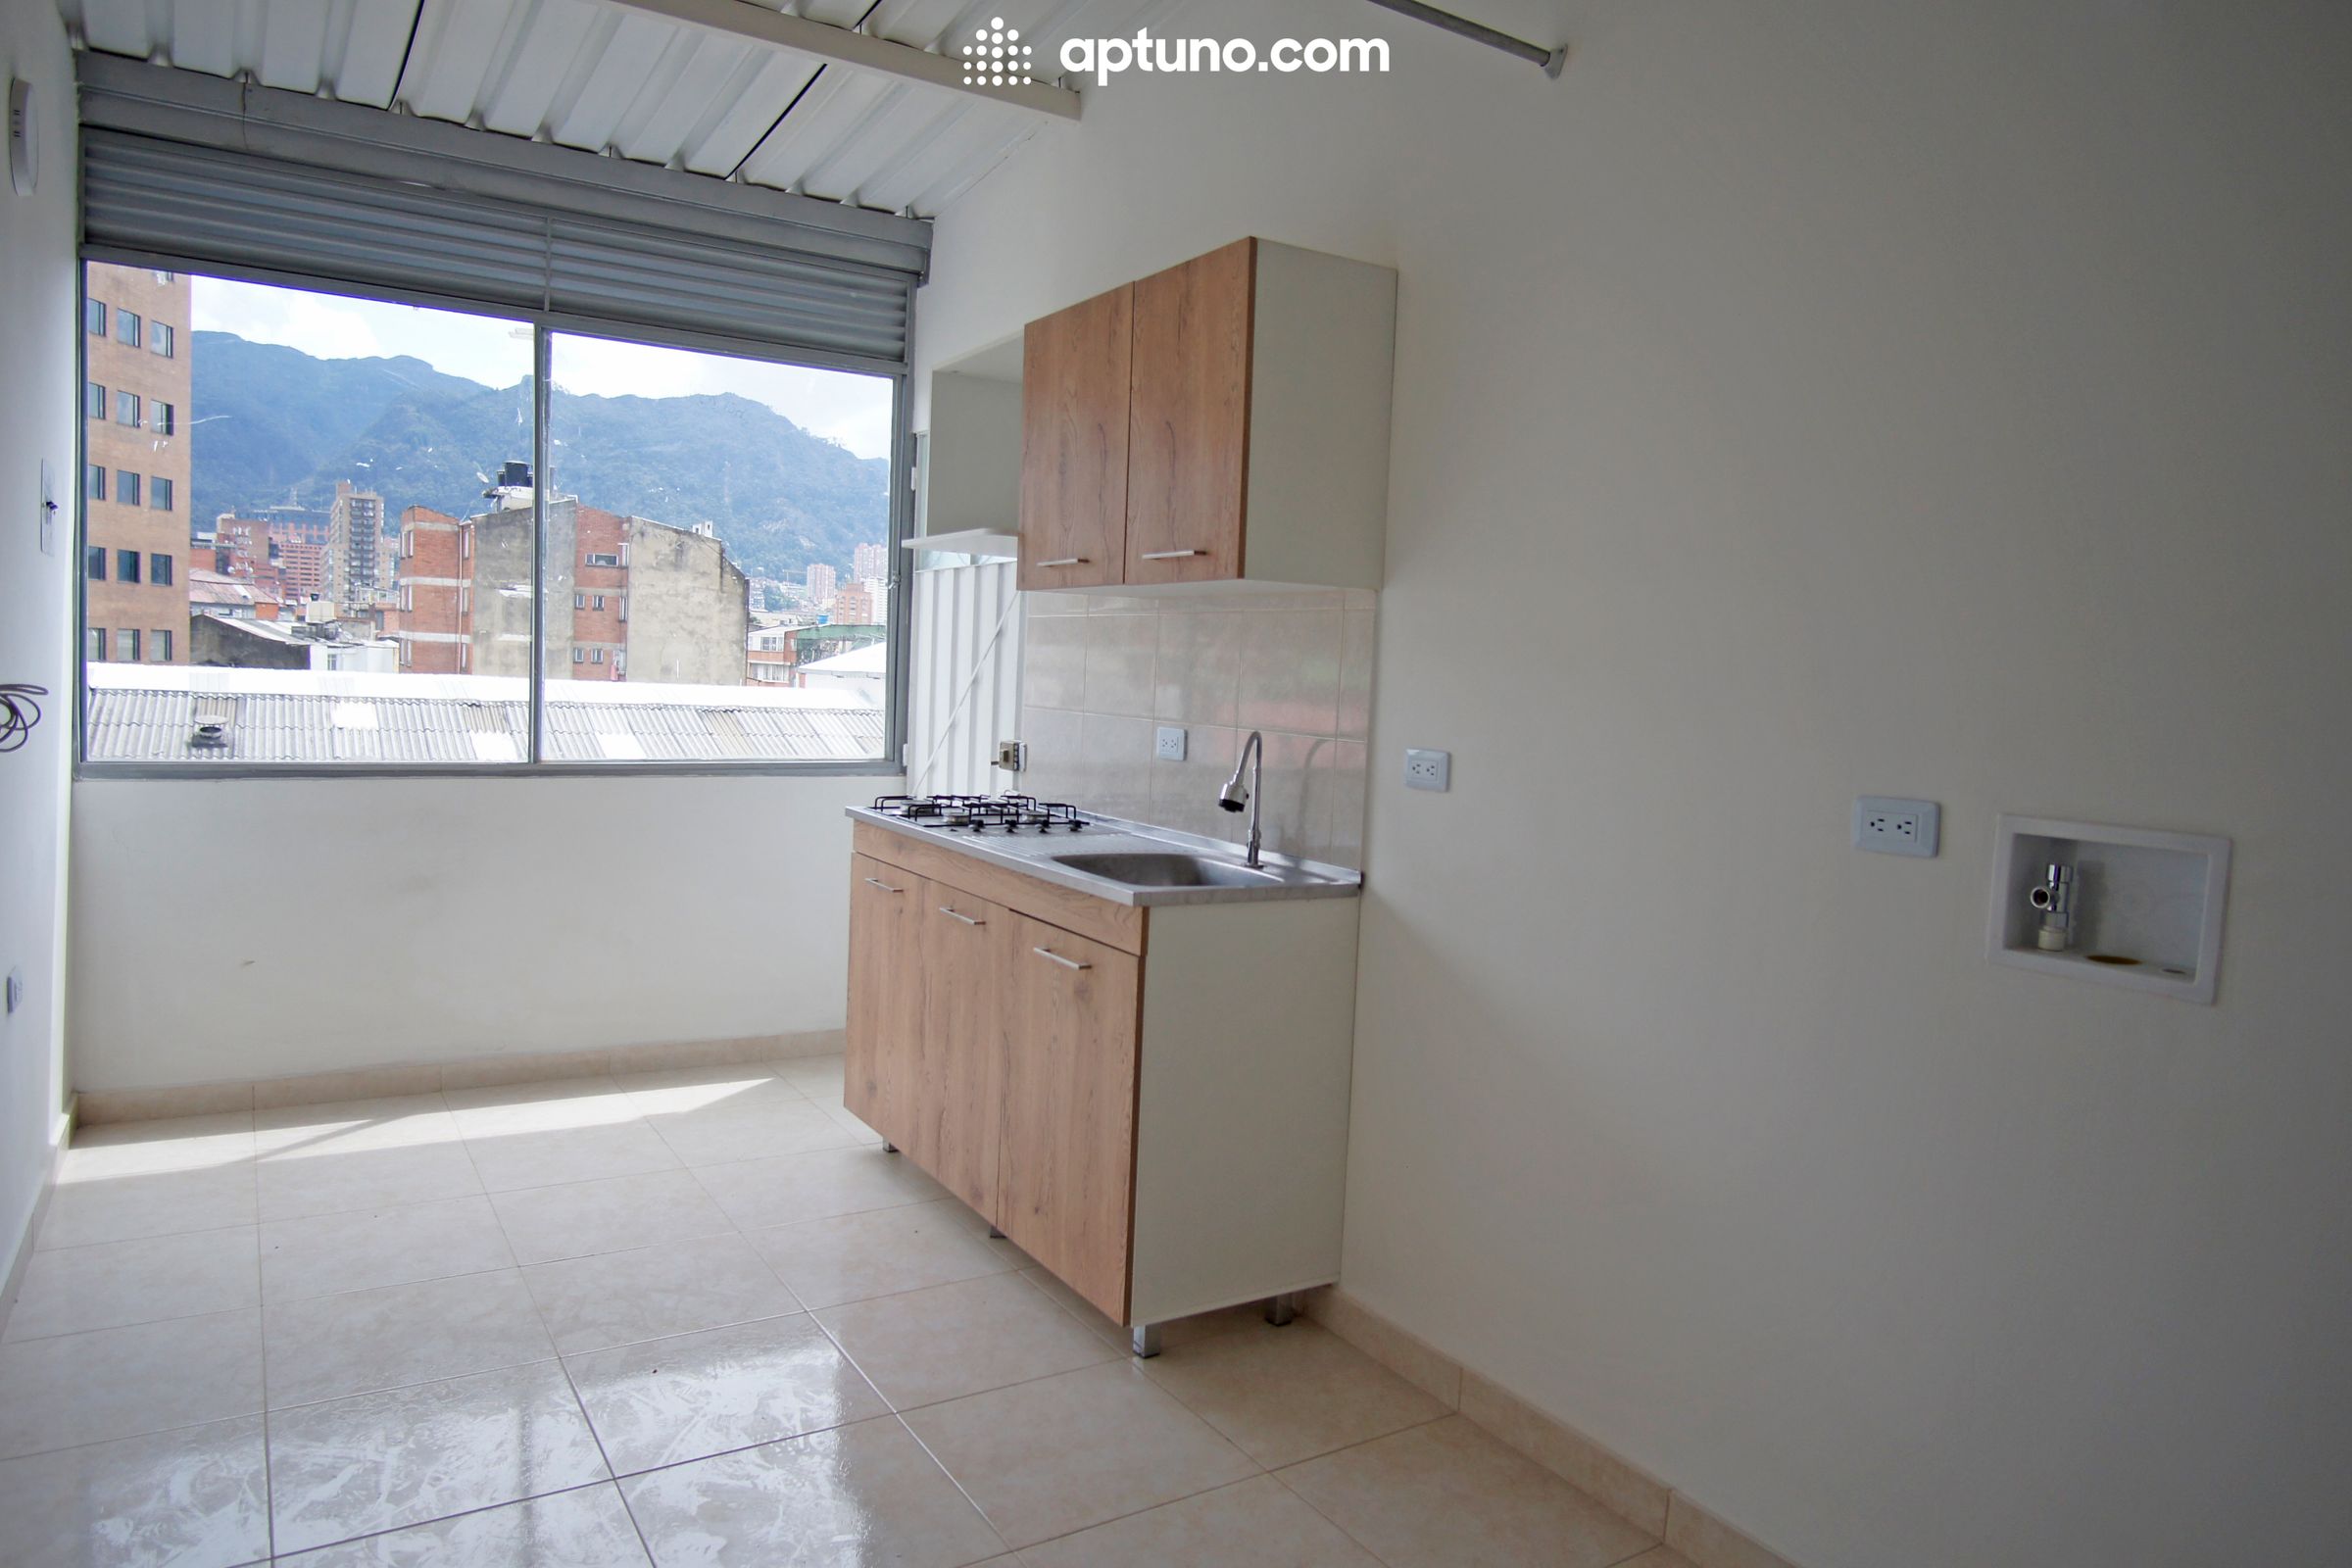 Apartamento en arriendo Colombia 50 m² - $ 1.700.000,00